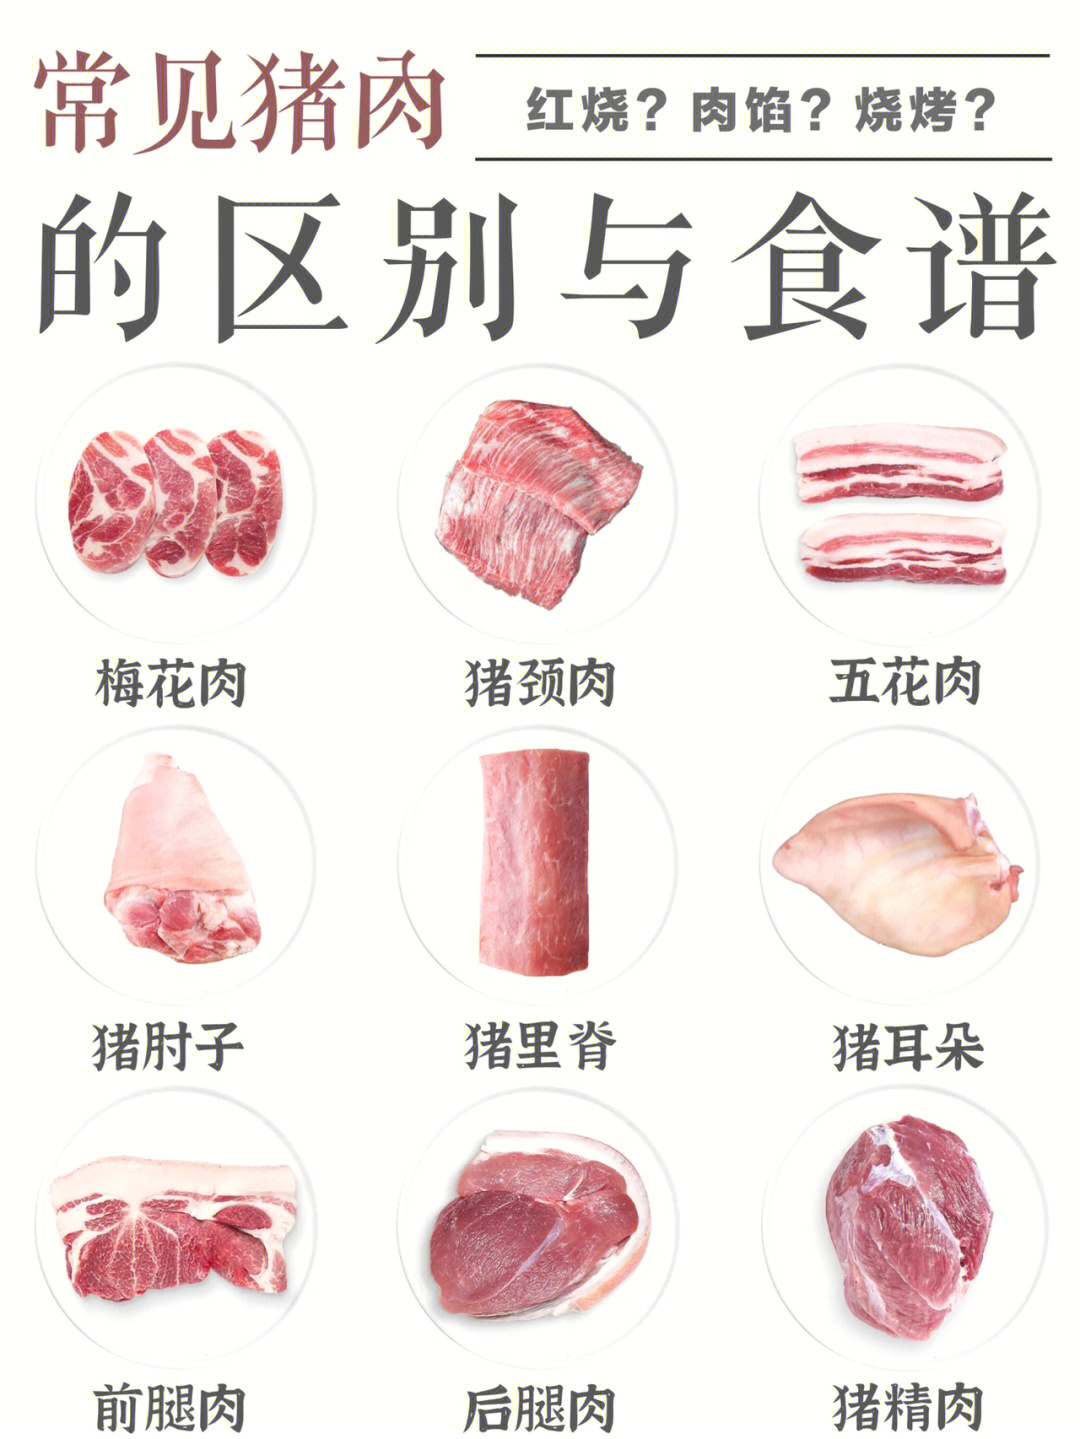 常见猪肉各部位的区别:一图看懂